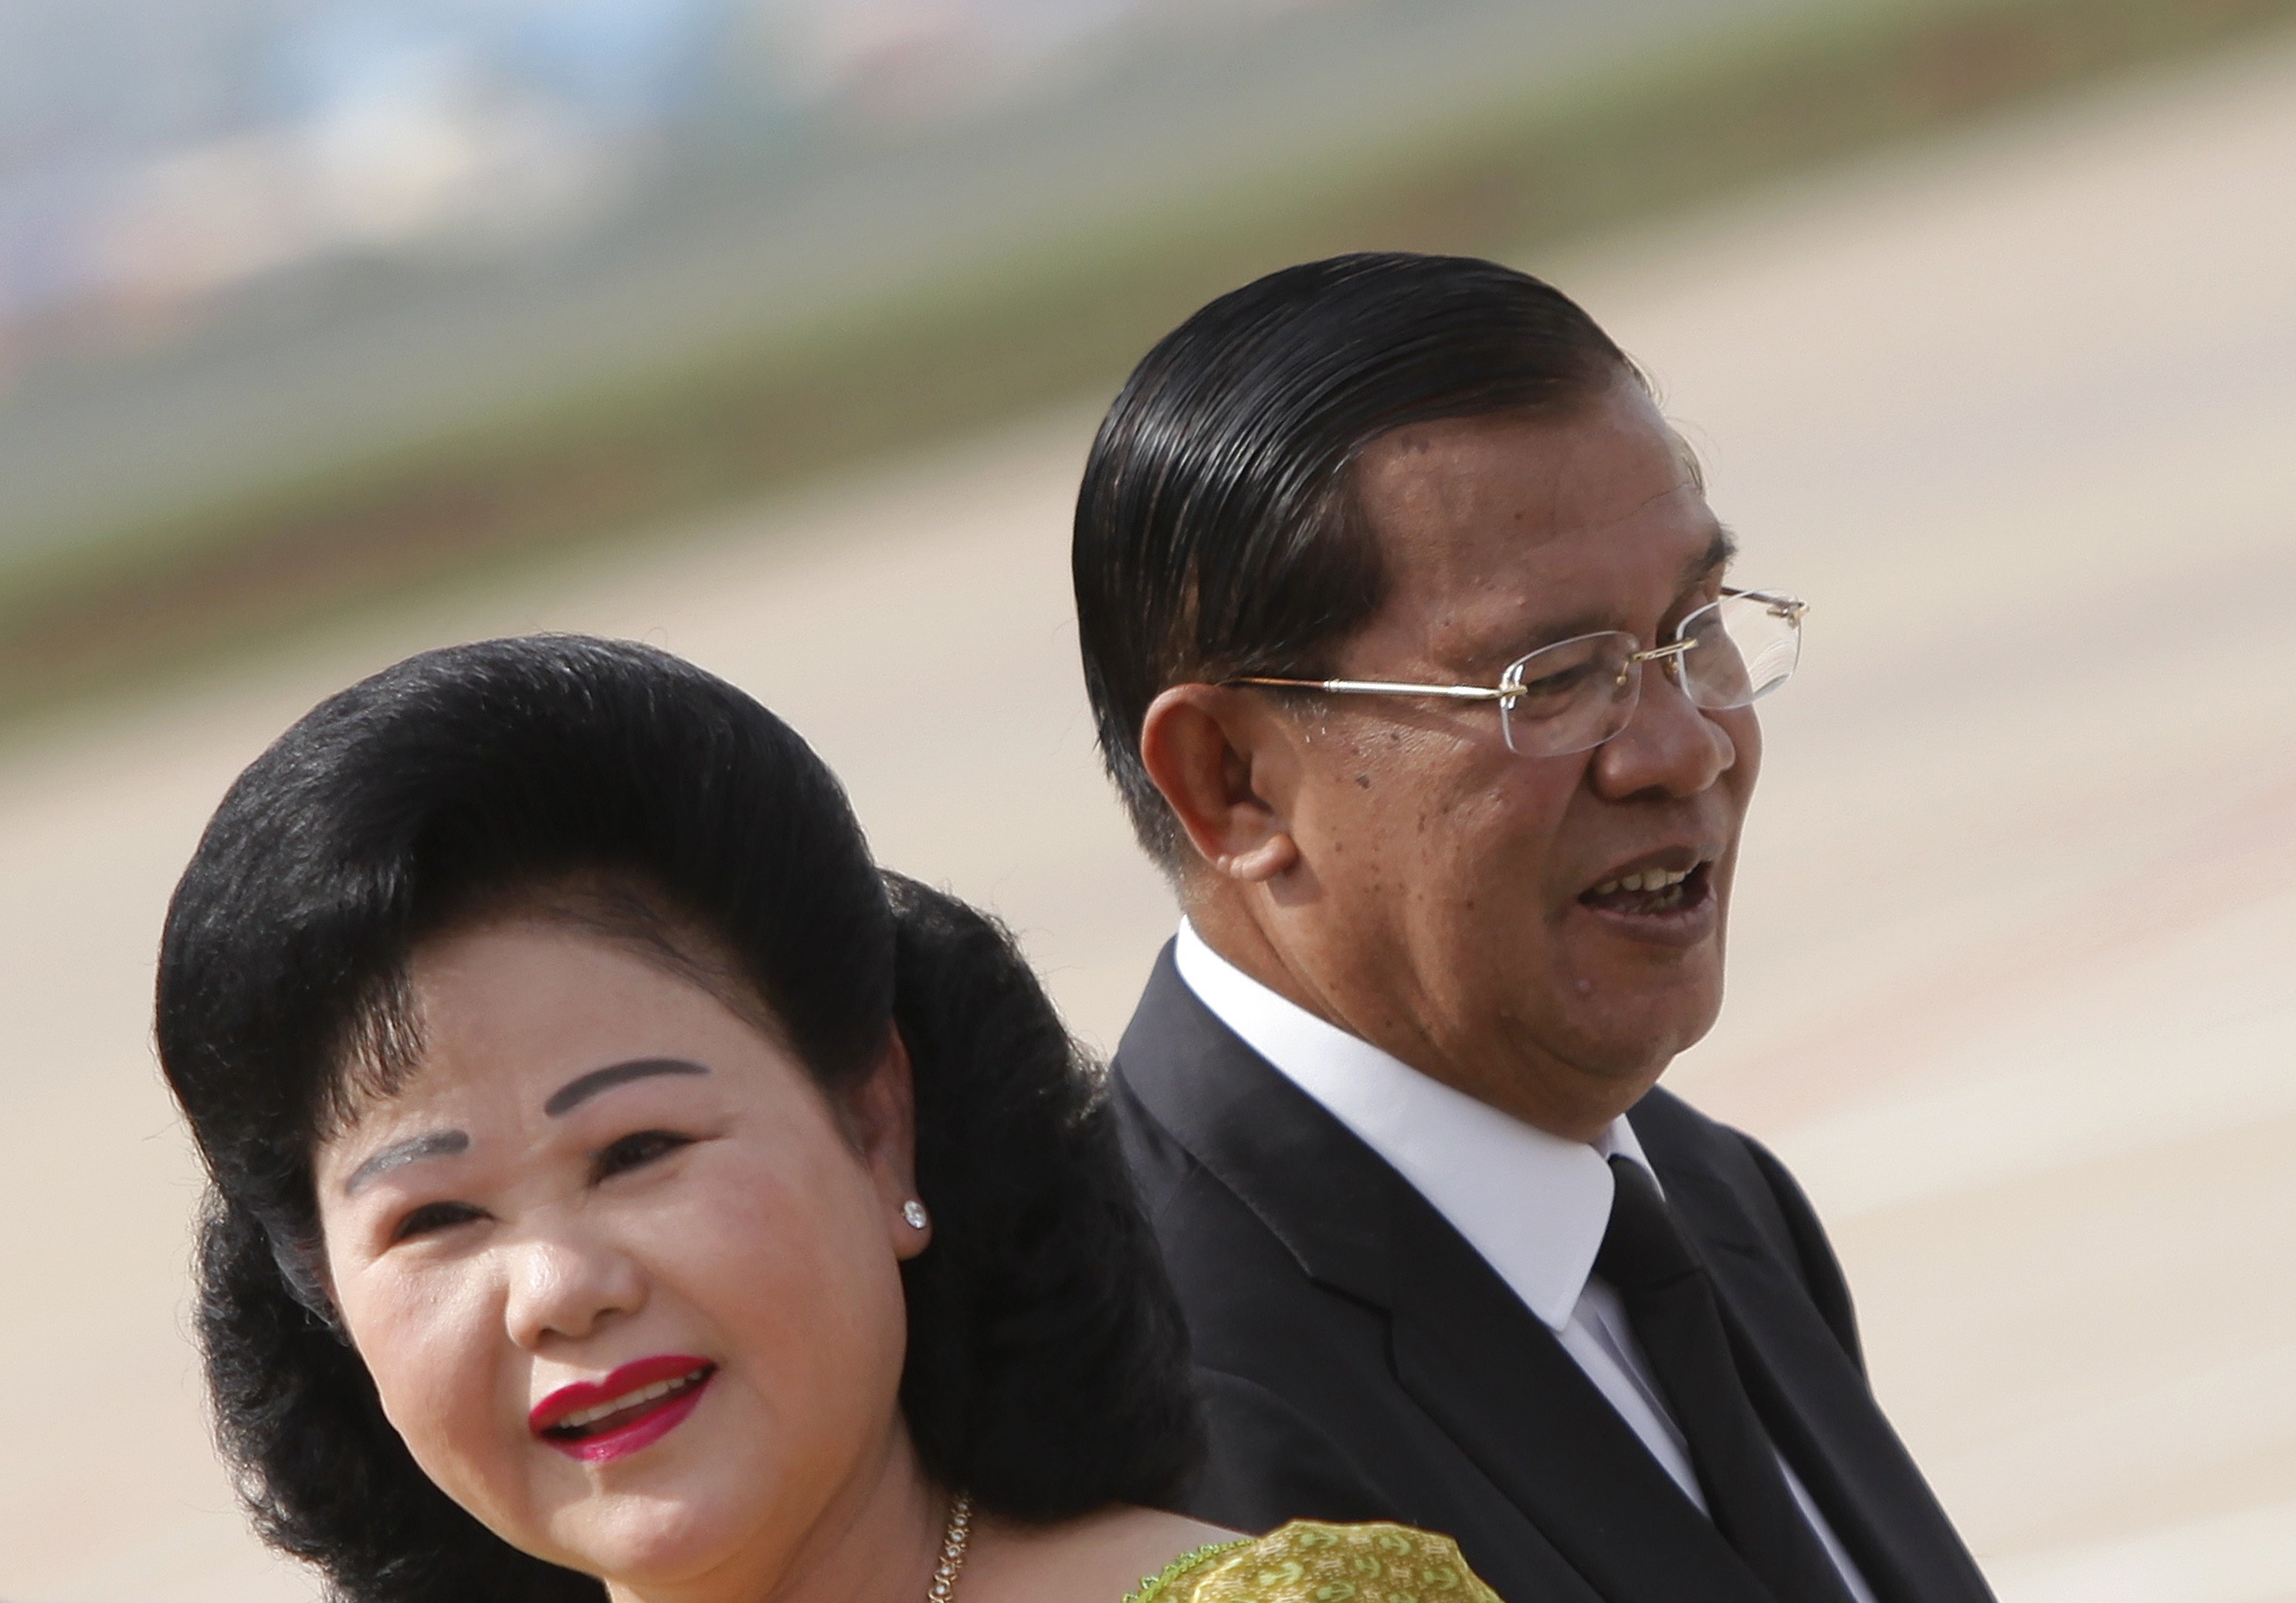 As protest looms, Cambodia's strongman Hun Sen faces restive, tech-savvy youth